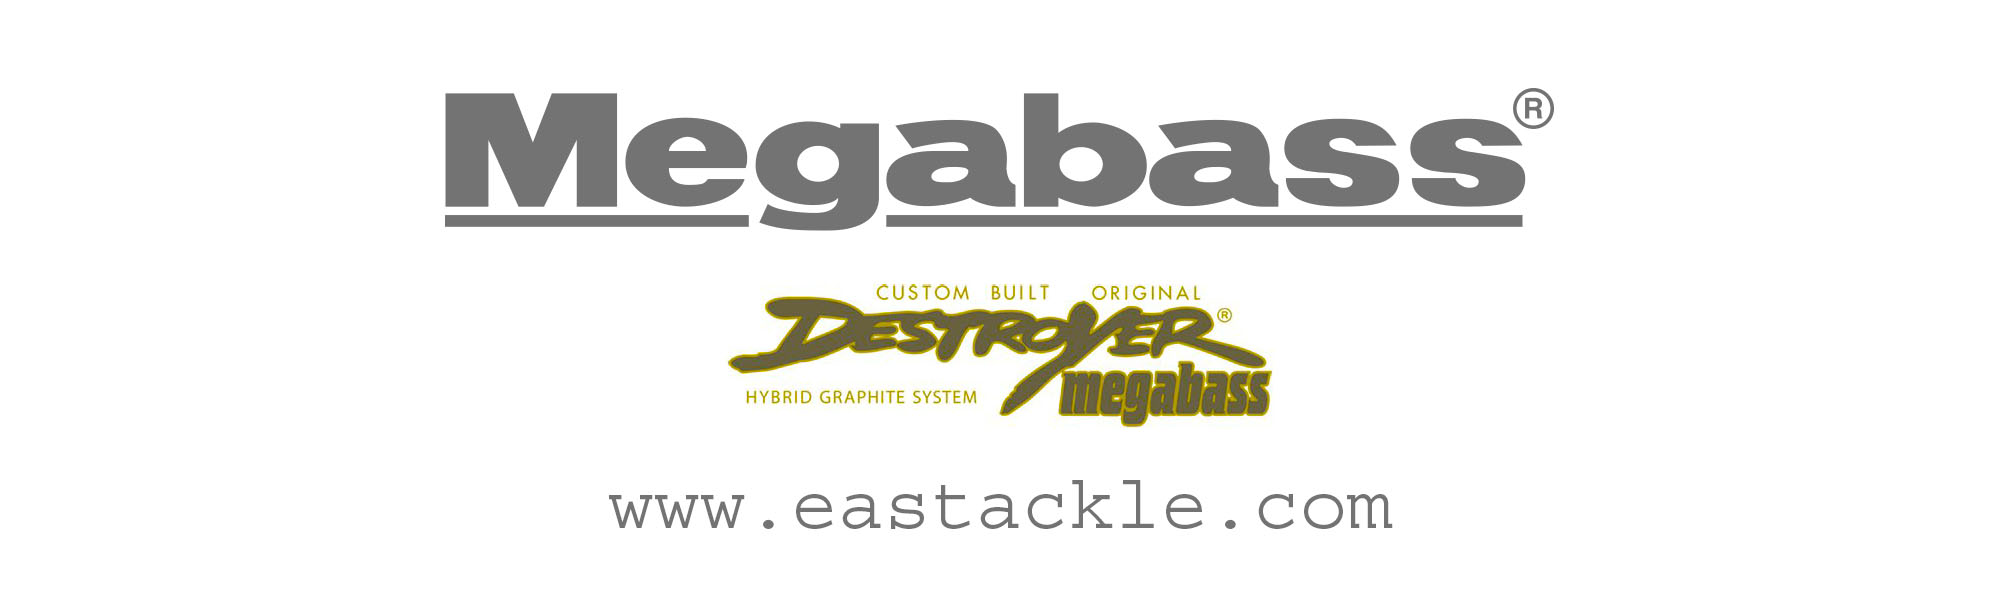 Megabass - Destroyer Phase 3 - F6-67X - G-AX - Bait Casting Rod | Eastackle